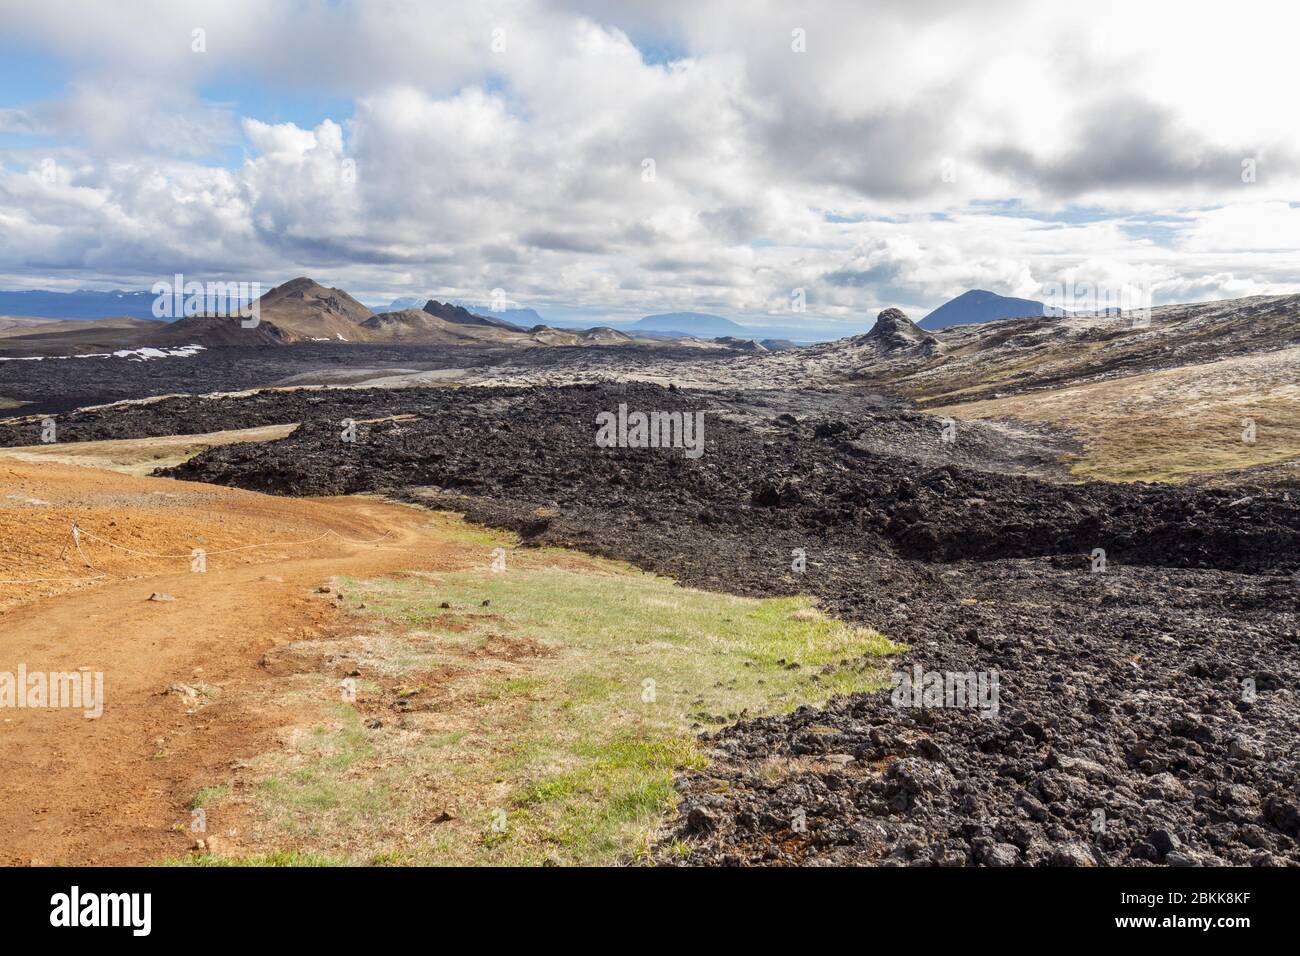 Contraste de la zona intacta por un flujo de lava reciente (últimos 30 años) (mirando al sur) en la zona volcánica de Kraflla cerca de Mývatn, Islandia. Foto de stock